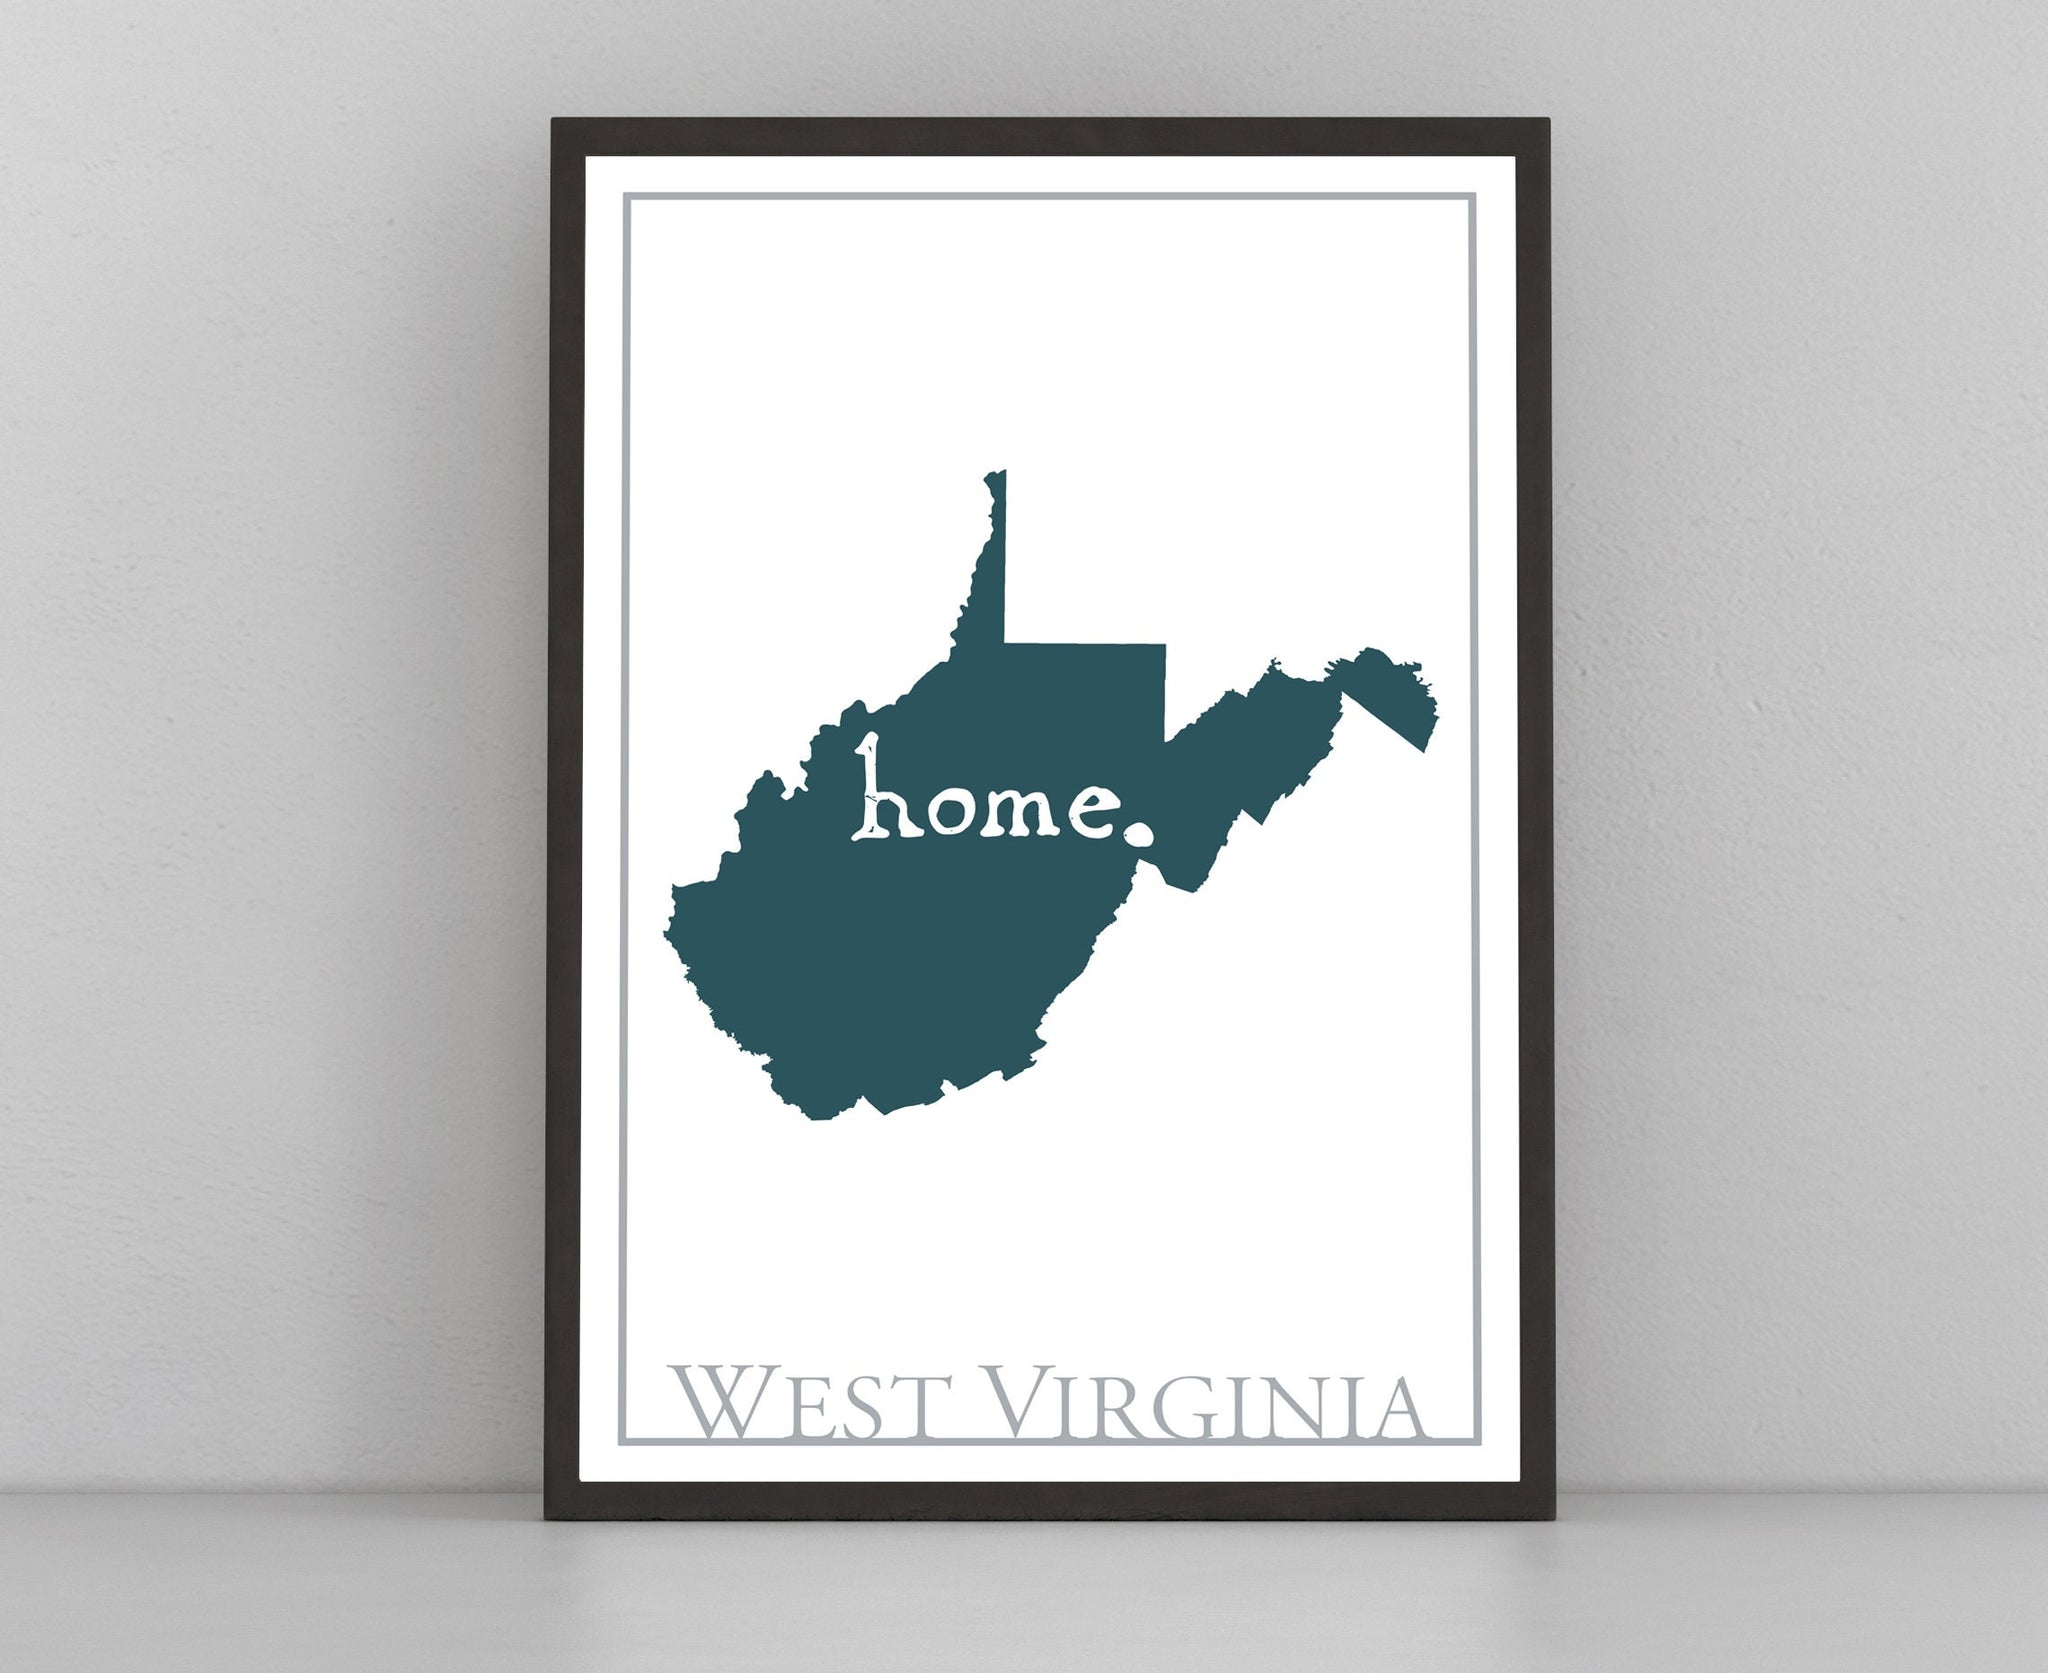 West Virginia Map Wall Art, West Virginia modern map poster print,City map wall decor,West Virginia City Poster,State Poster,Home wall decor